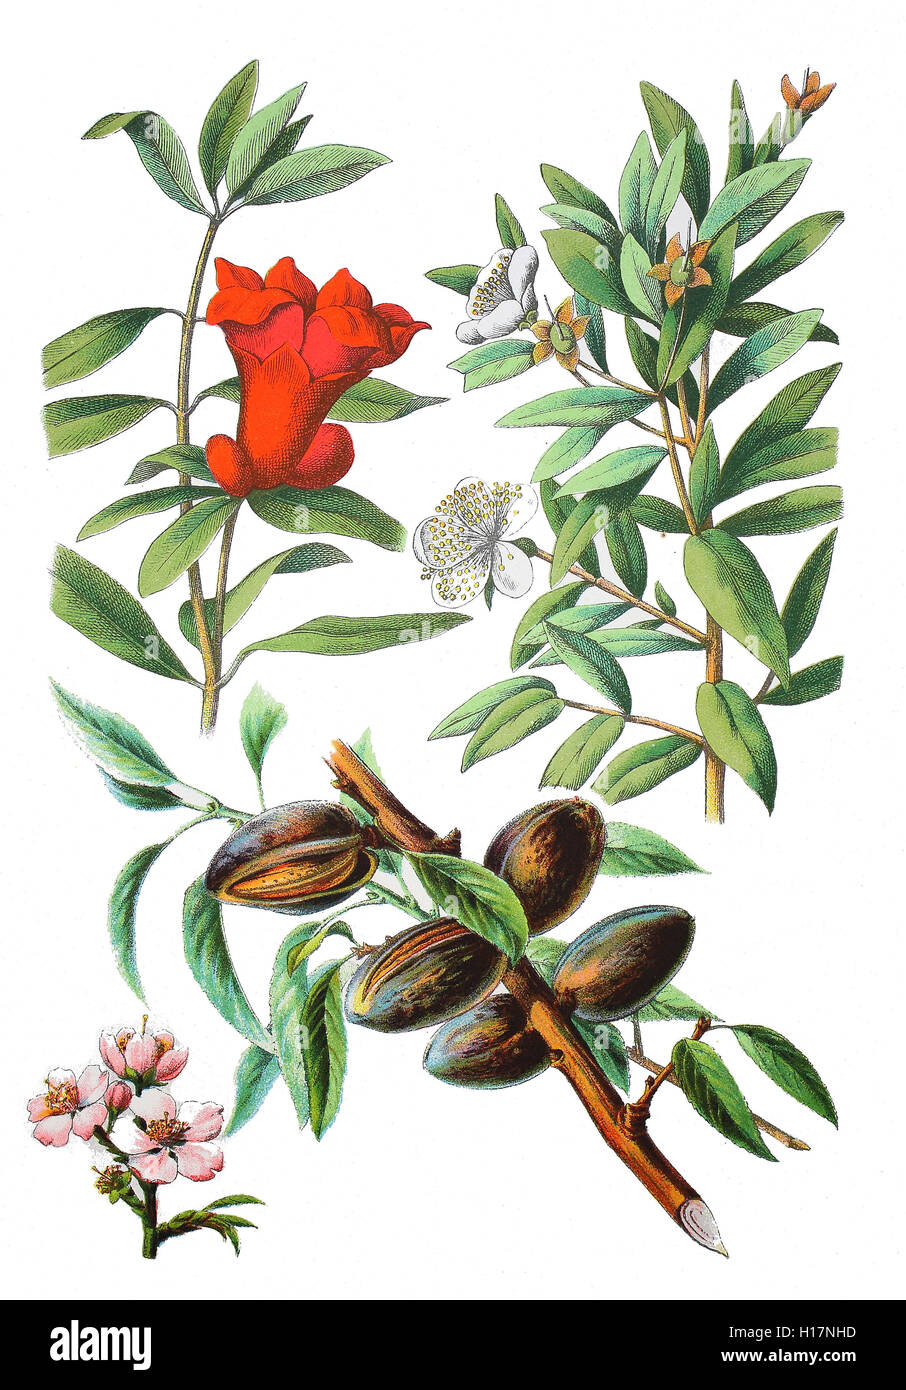 Granatapfel, Punica granatum (links oben), Myrte, Brautmyrte auch Gemeine Myrte, Myrtus communis (oben rechts), Mandelbaum, Prunus dulcis (unten) Stock Photo